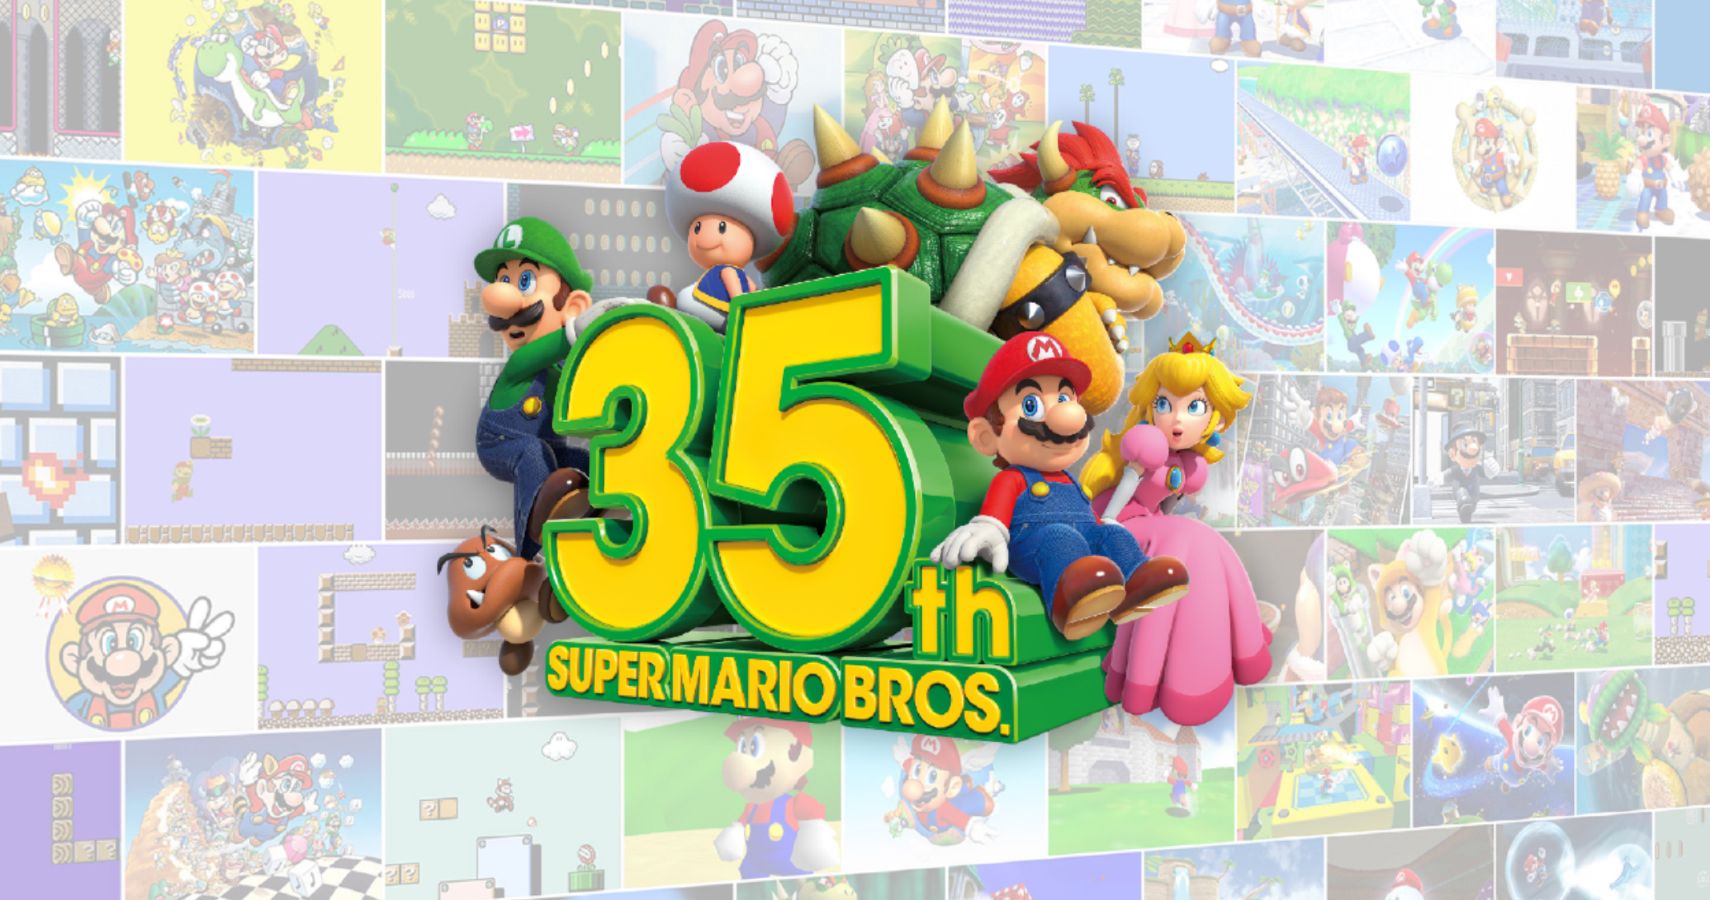 Super Mario 35th Anniversary logo